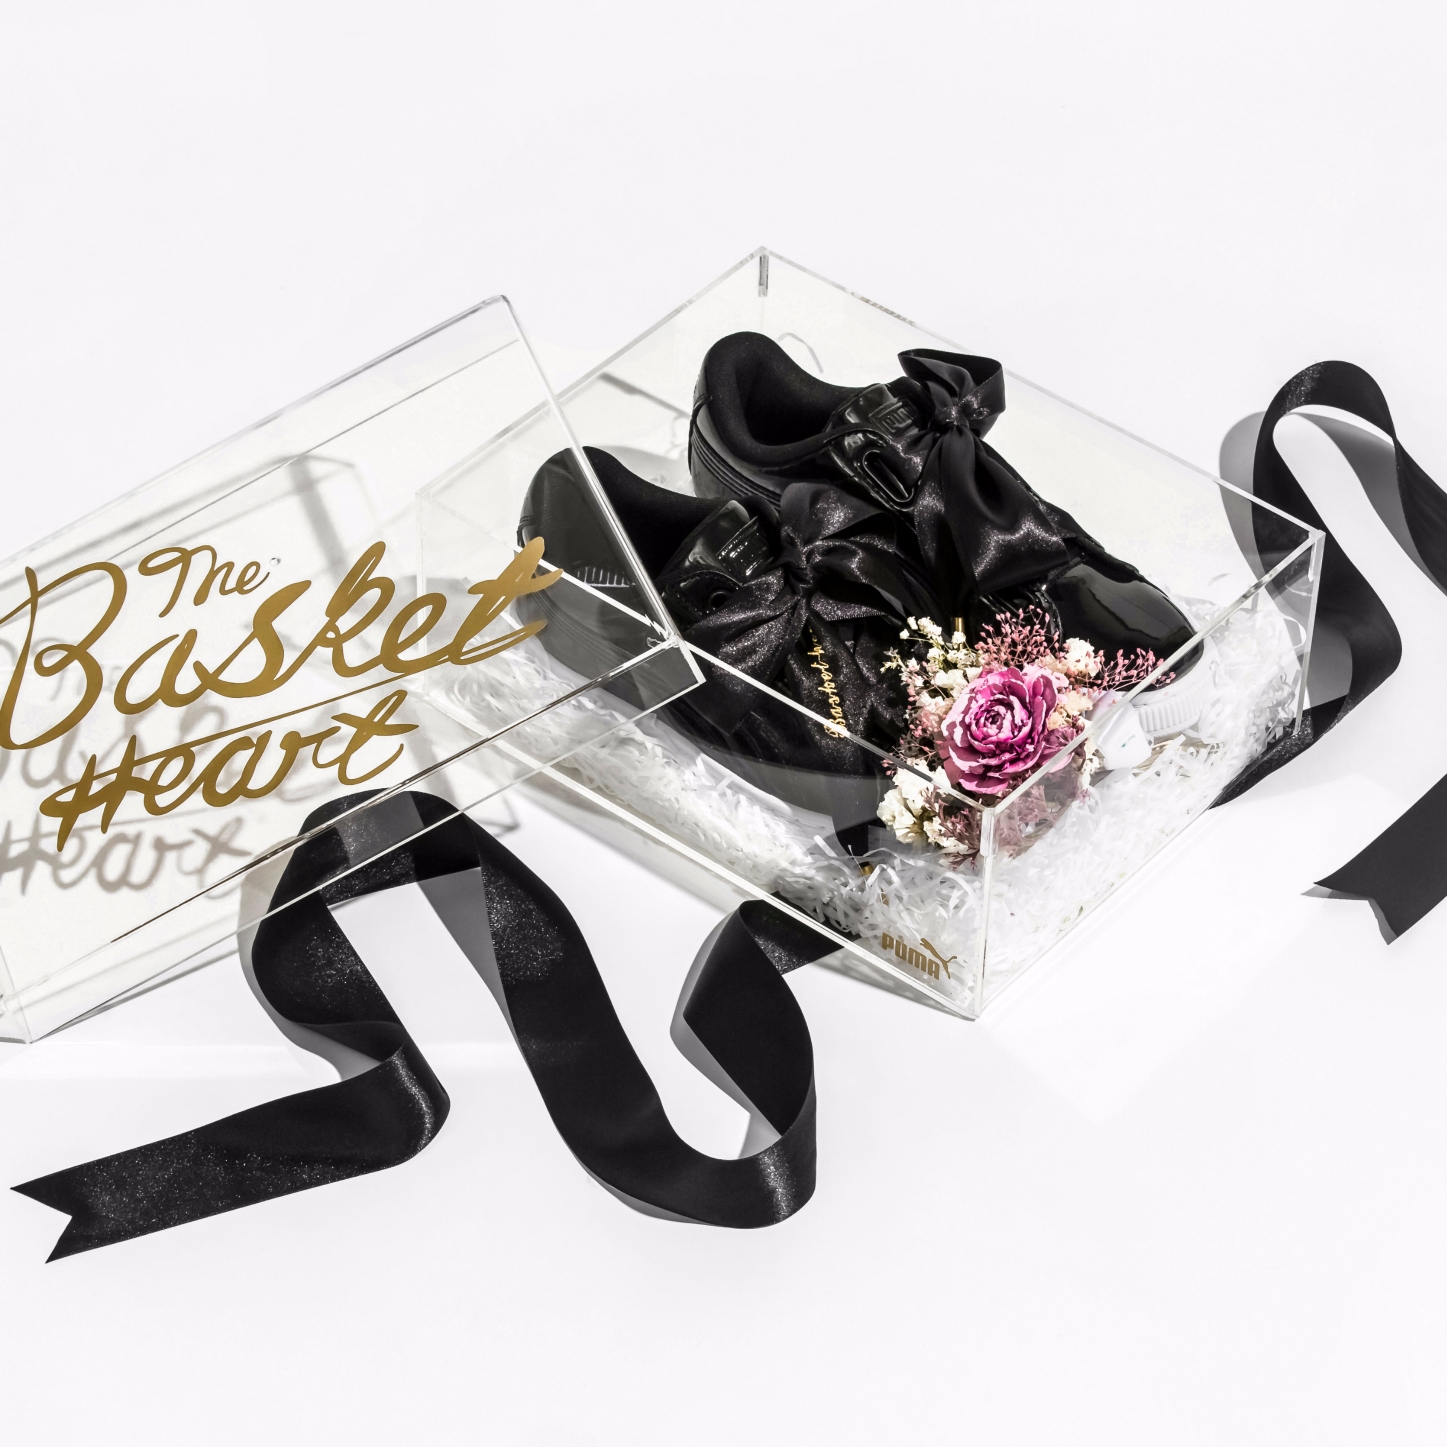 太美啦！台灣才有！ PUMA BASKET HEART 蝴蝶結鞋 客製化精裝禮盒 限量開放預購中！